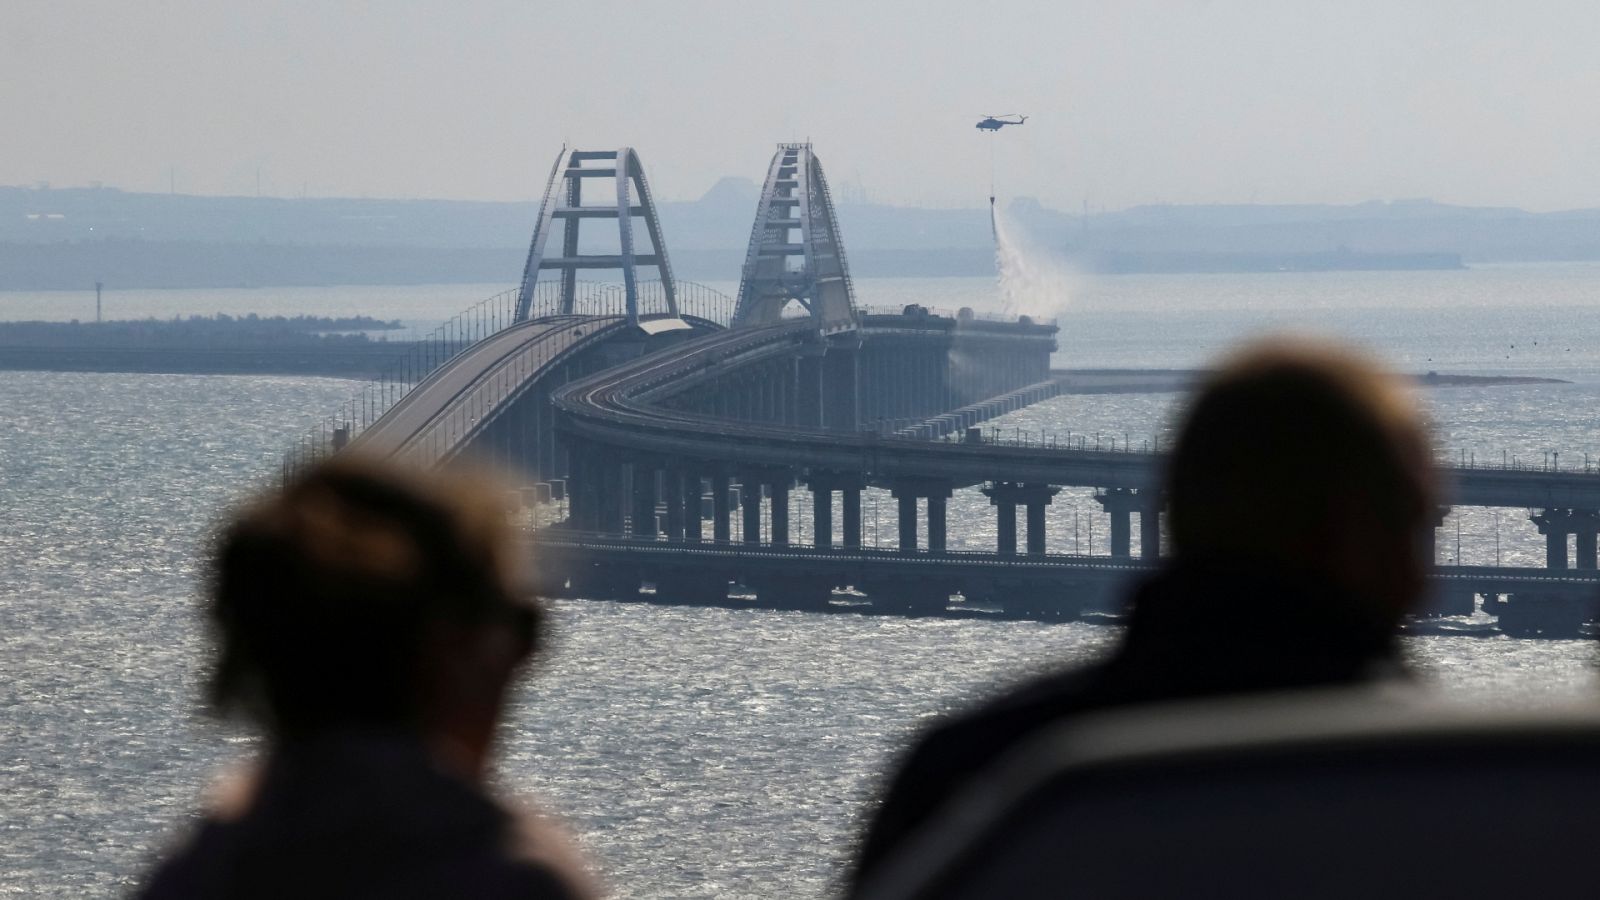 Guerra de Ucrania | Una explosión destruye parte del puente de Crimea, símbolo de la anexión rusa de la península